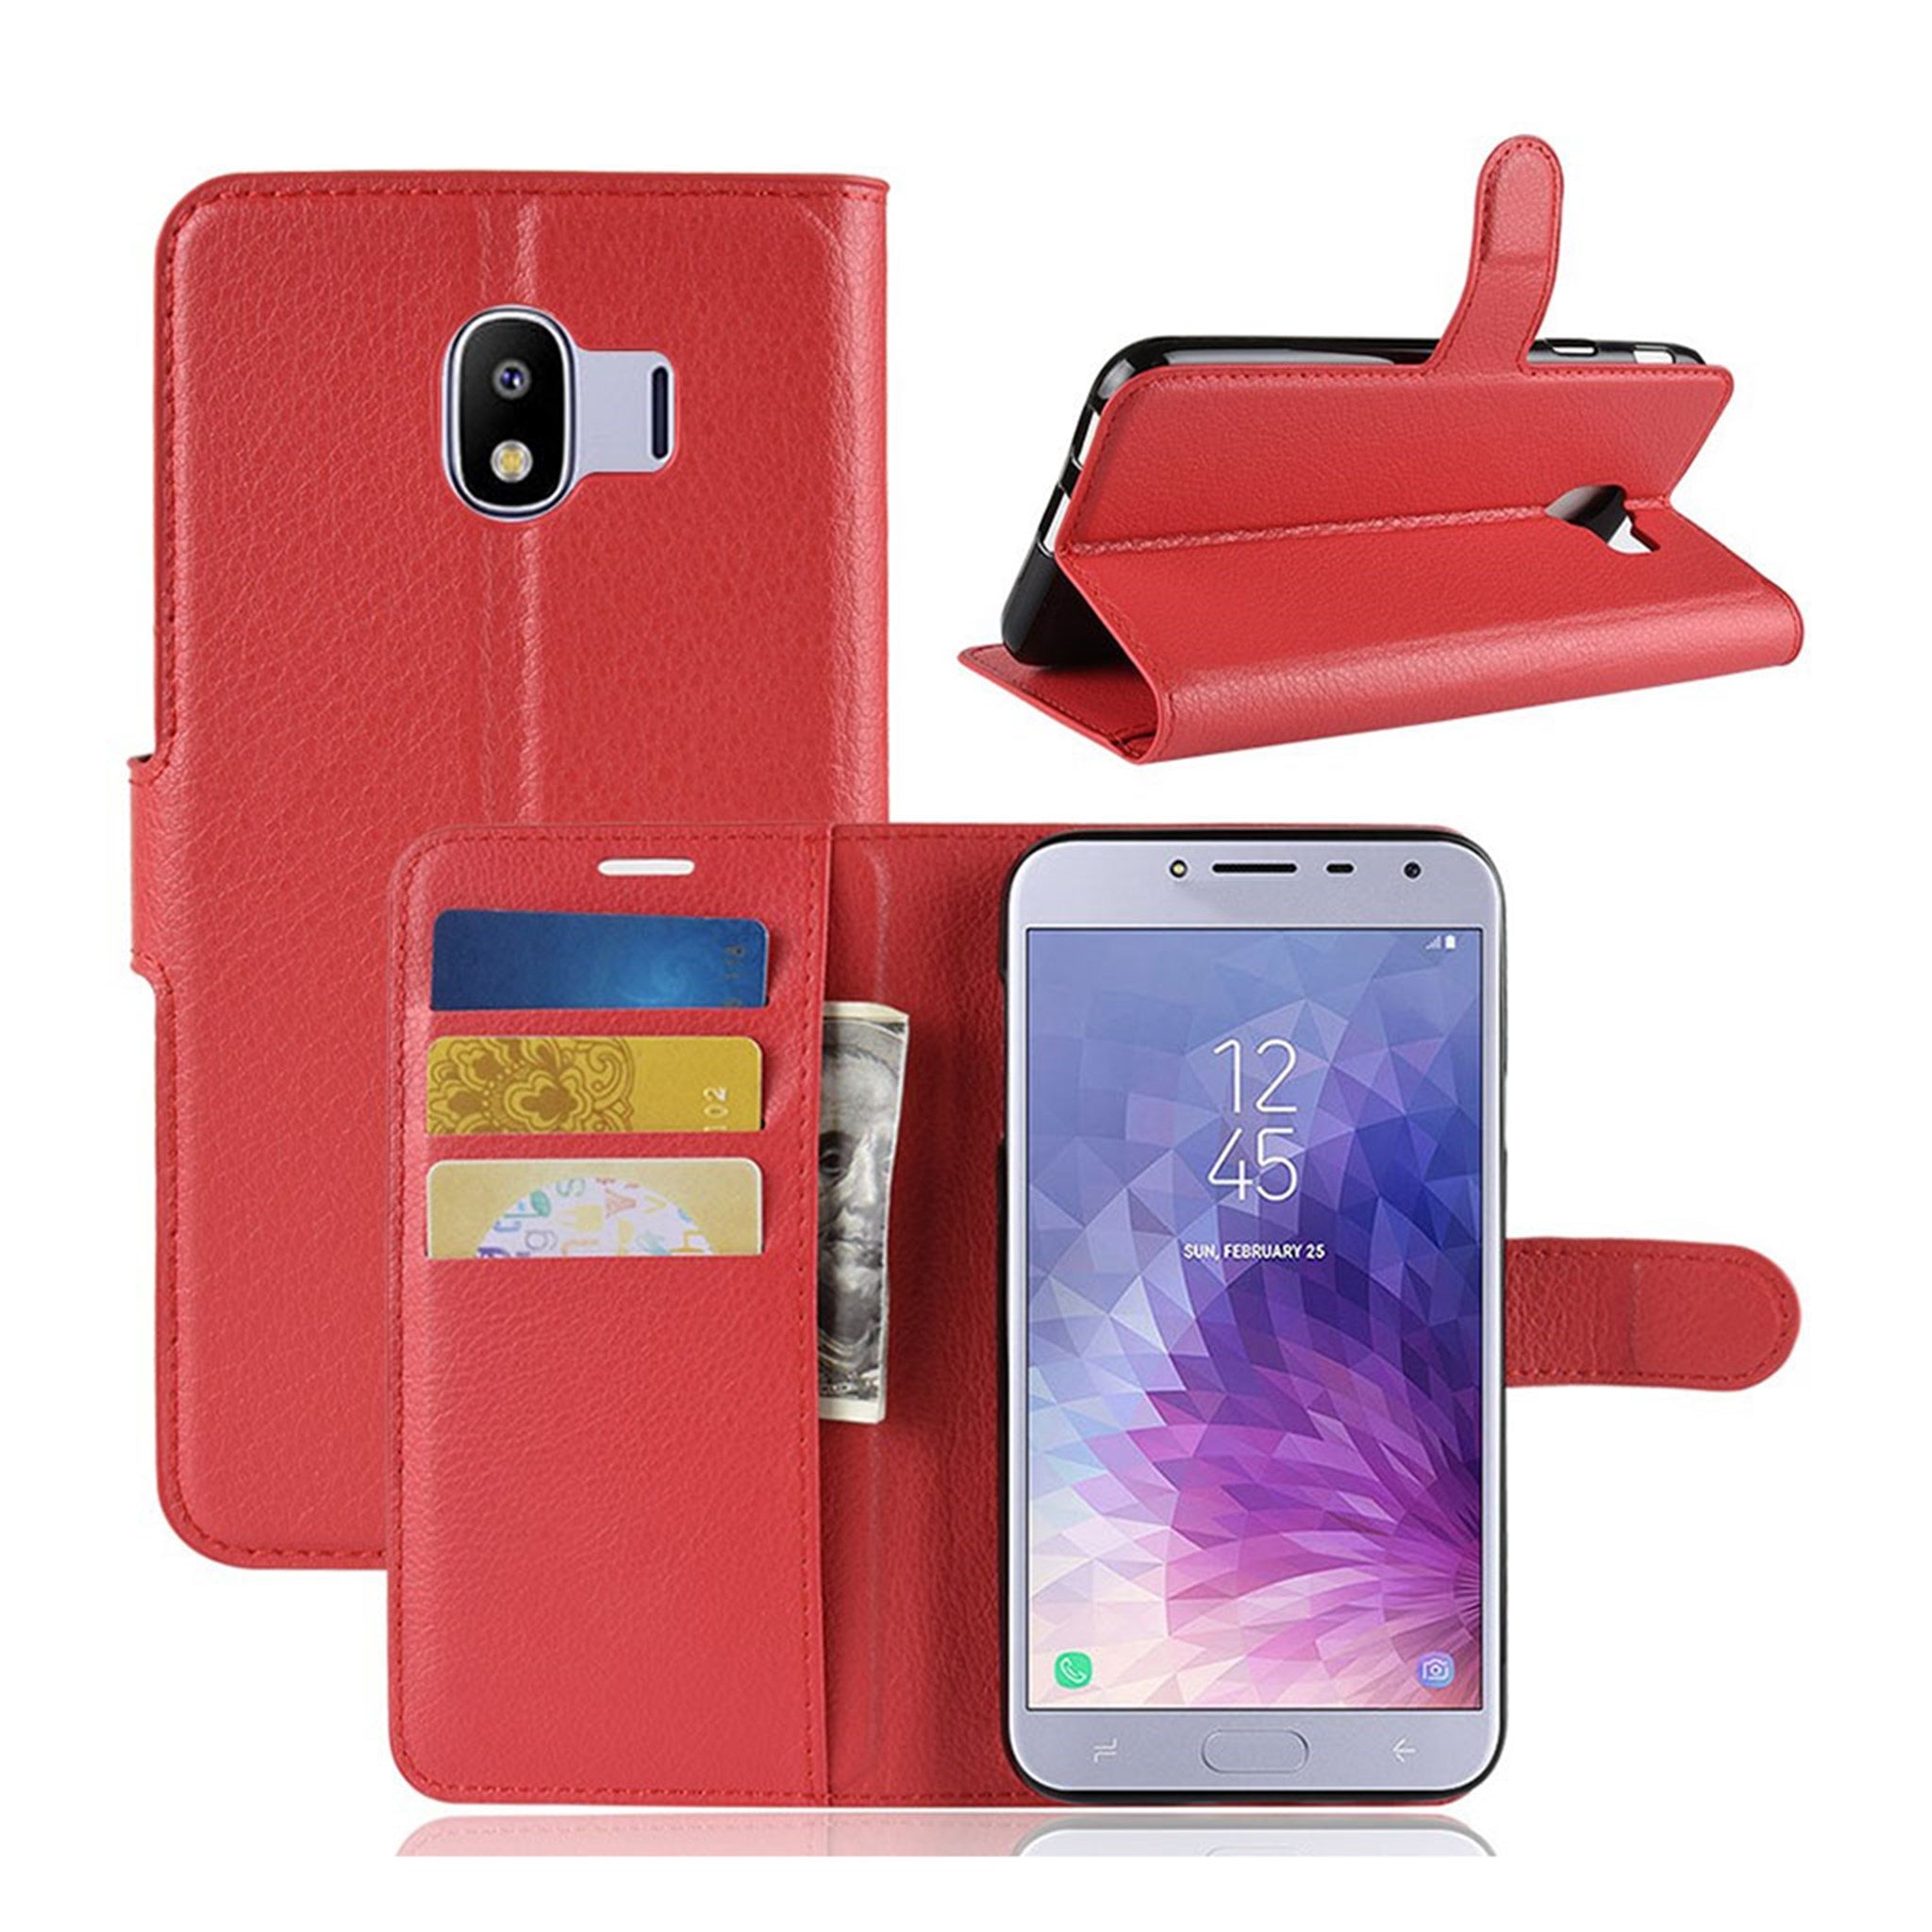 Samsung Galaxy J4 (2018) litchi texture leather flip case - Red